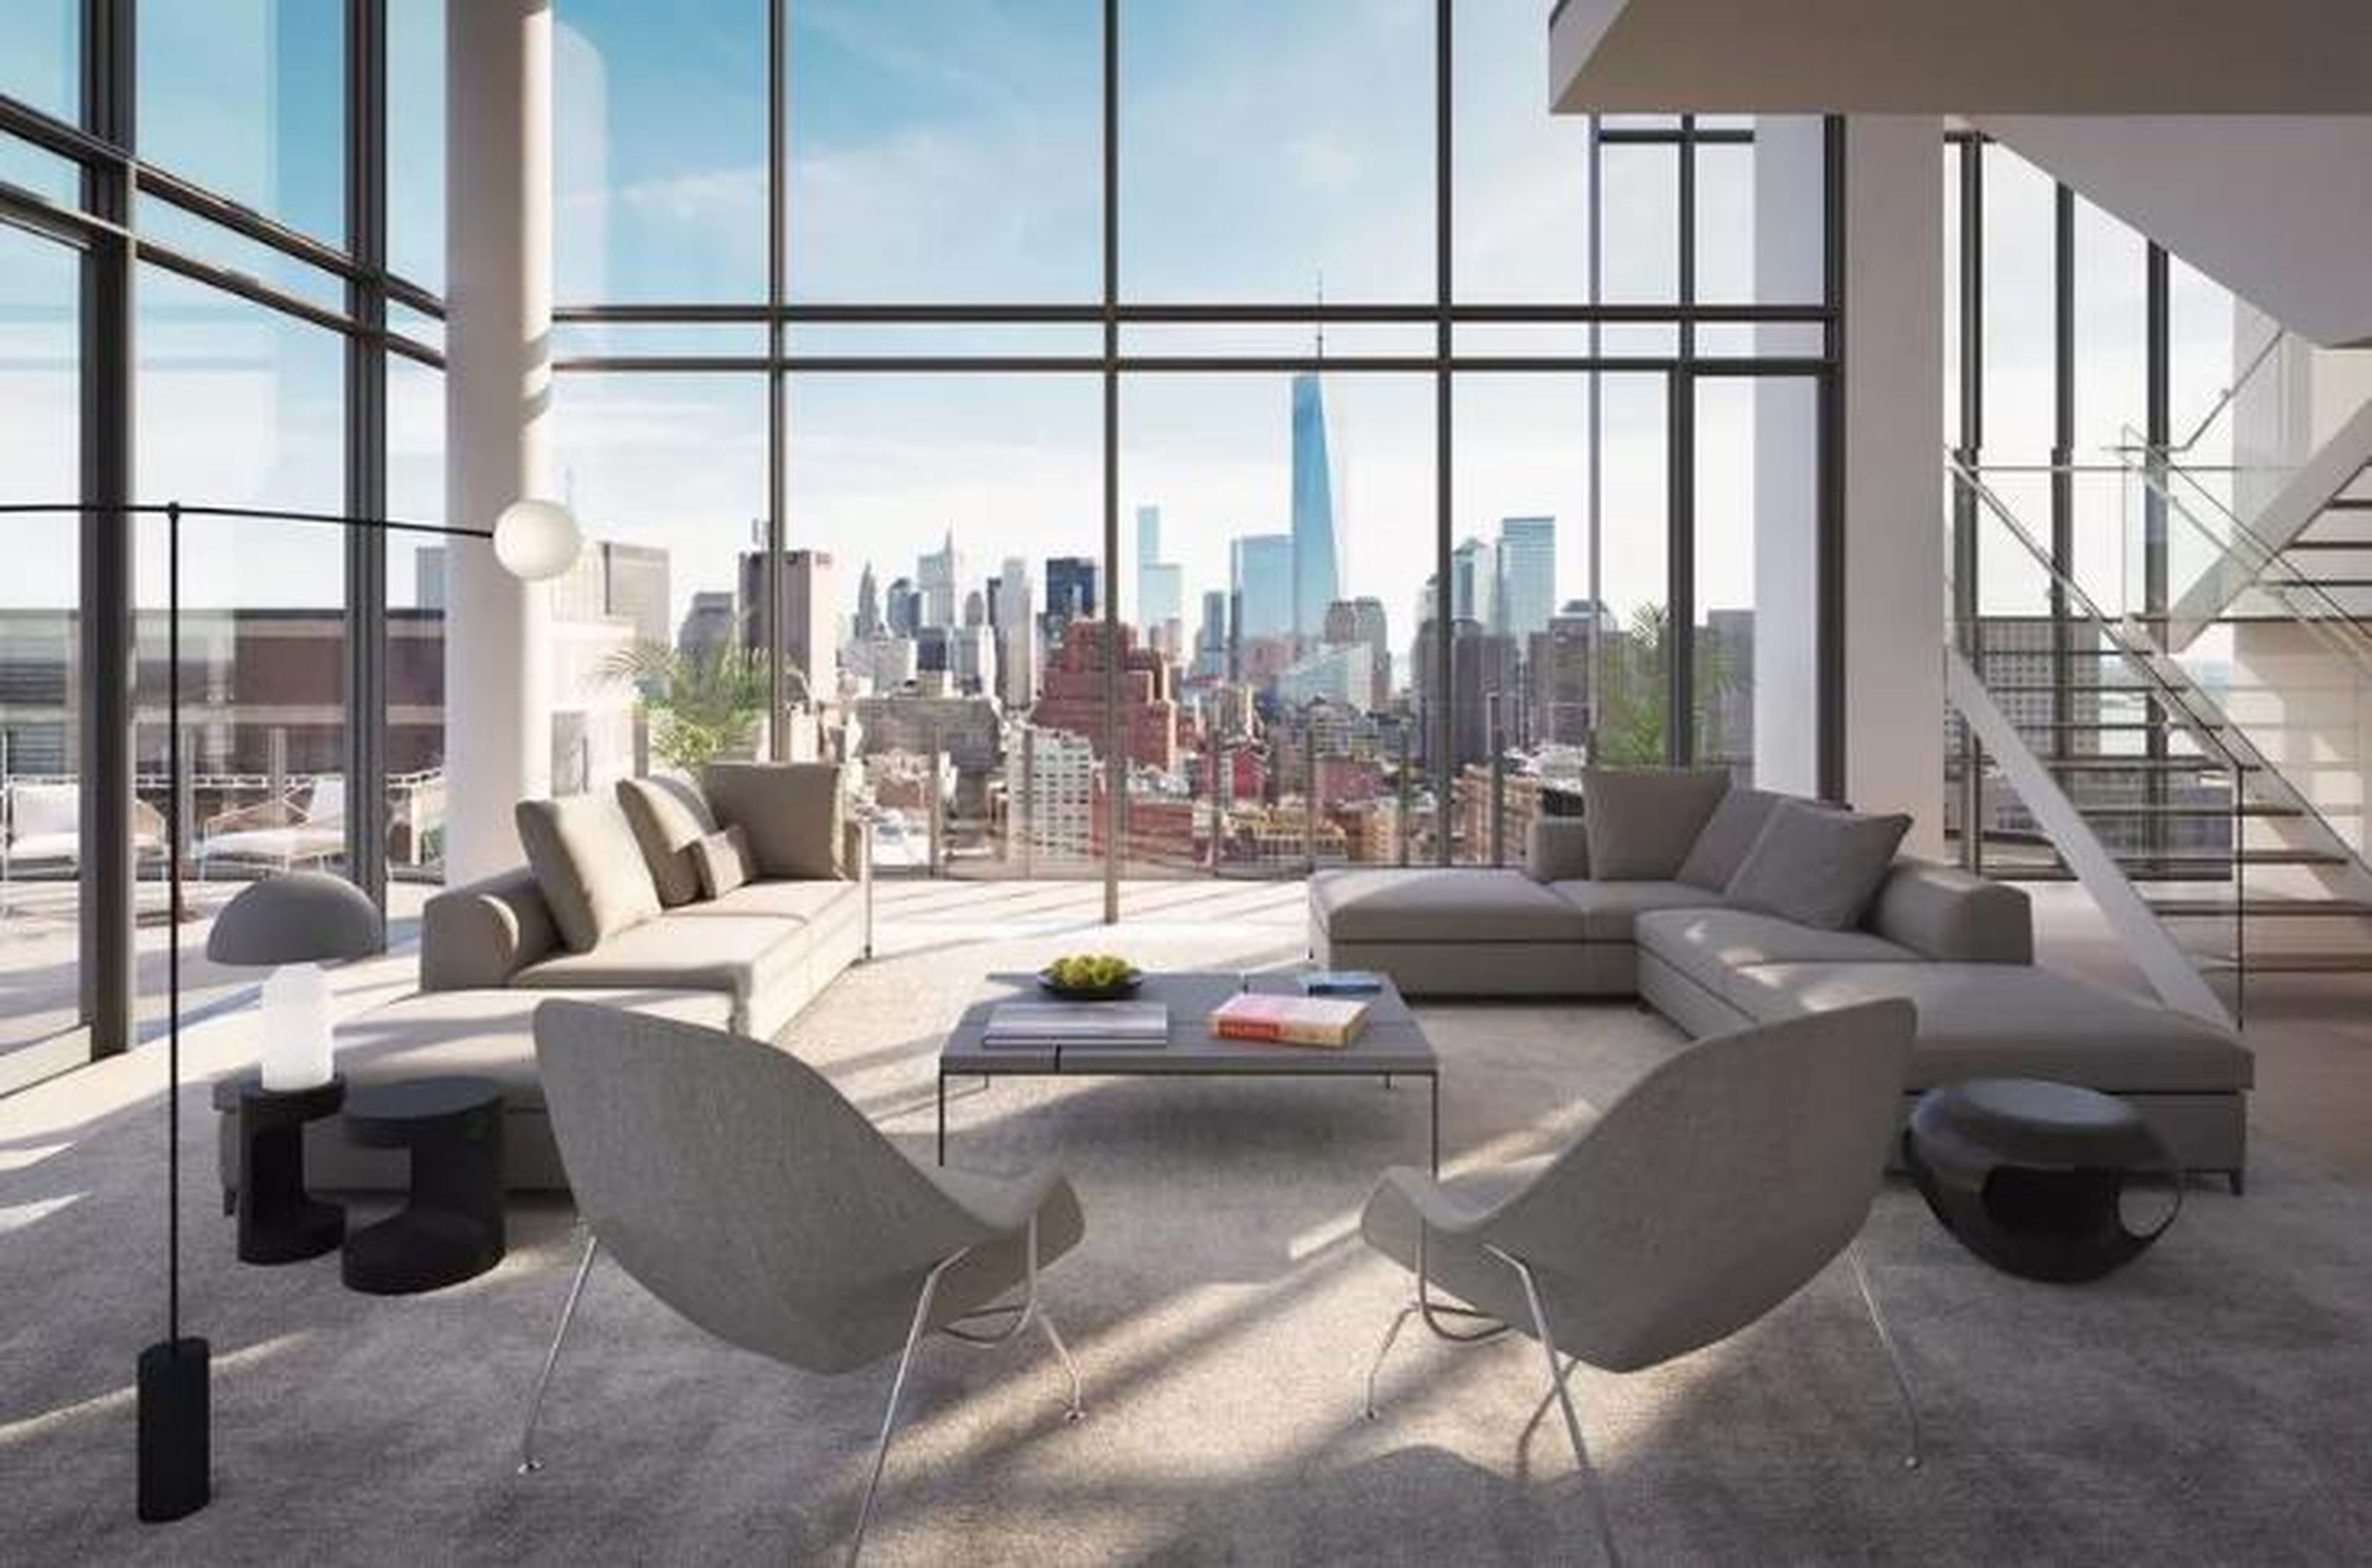 [RE] Se dice que Travis Kalanick, cofundador y ex director ejecutivo de Uber, compró un ático en un edificio de apartamentos del Soho en la ciudad de Nueva York por más de 40 millones de dólares.